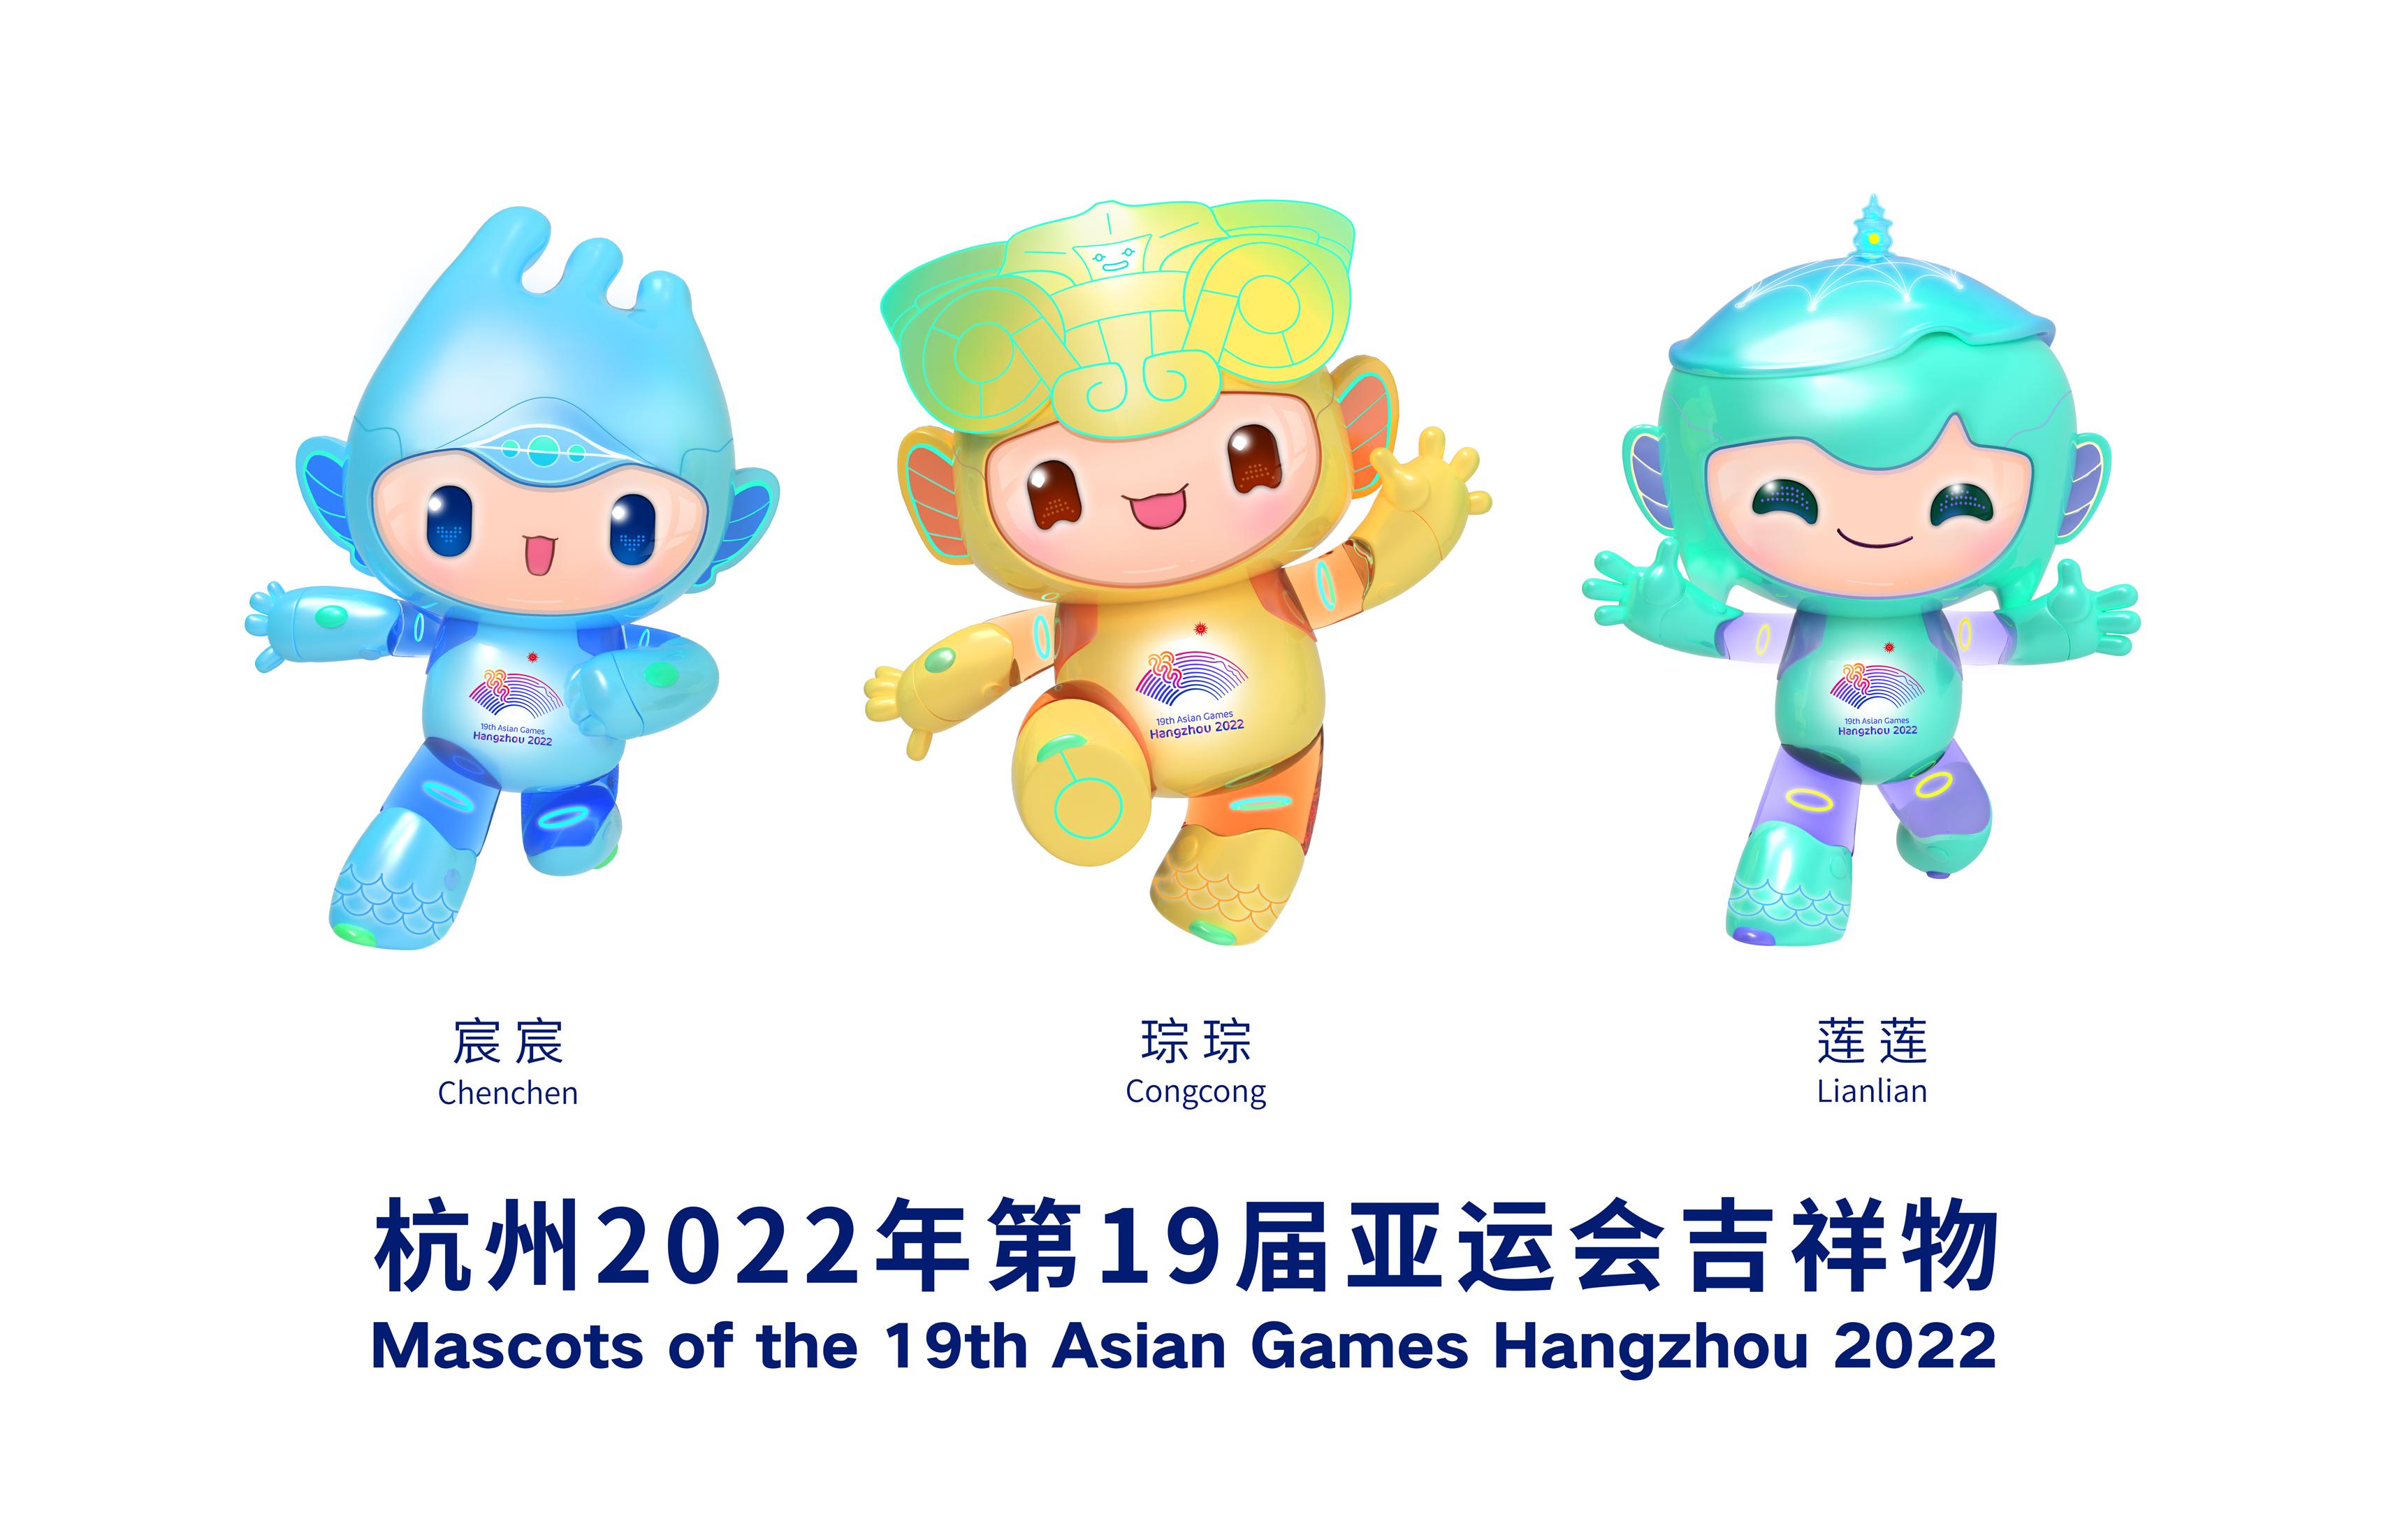 2022年第19届亚运会组委会发布杭州亚运会吉祥物江南忆组合,琮琮